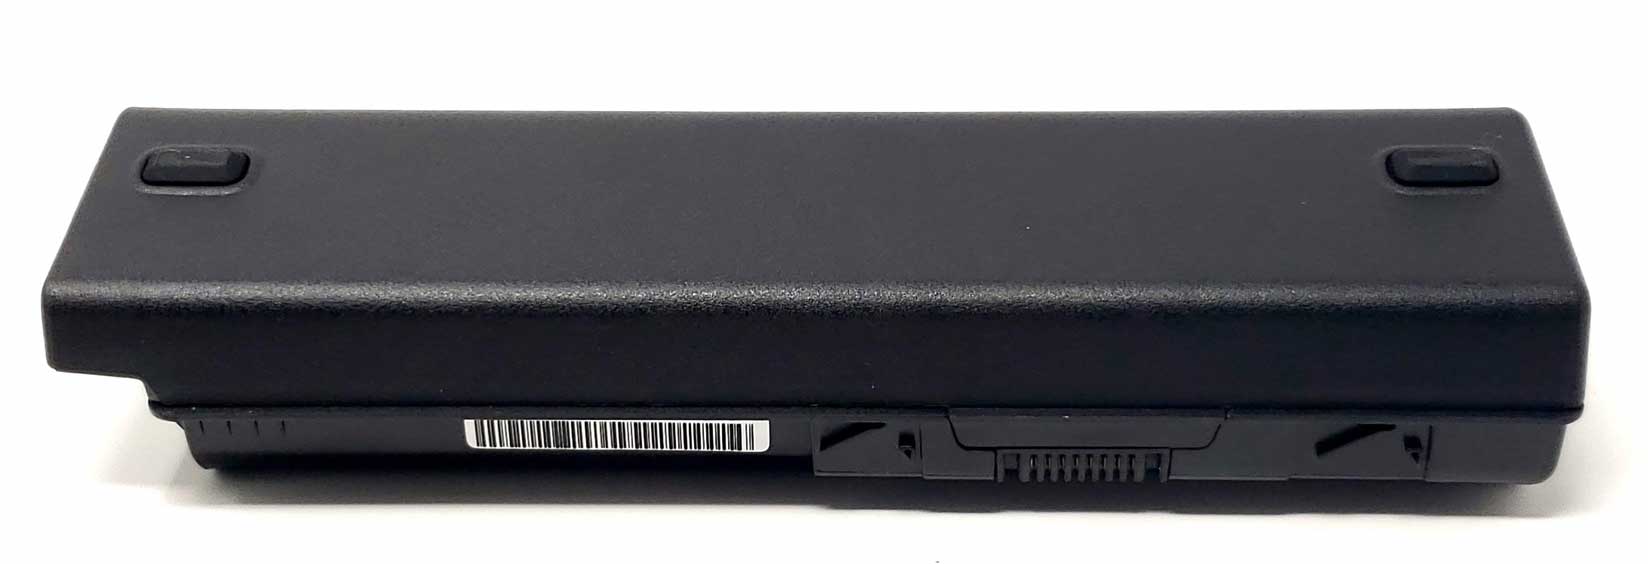 External Laptop Battery Charger for HP Pavilion DV6-1000 DV6-2000